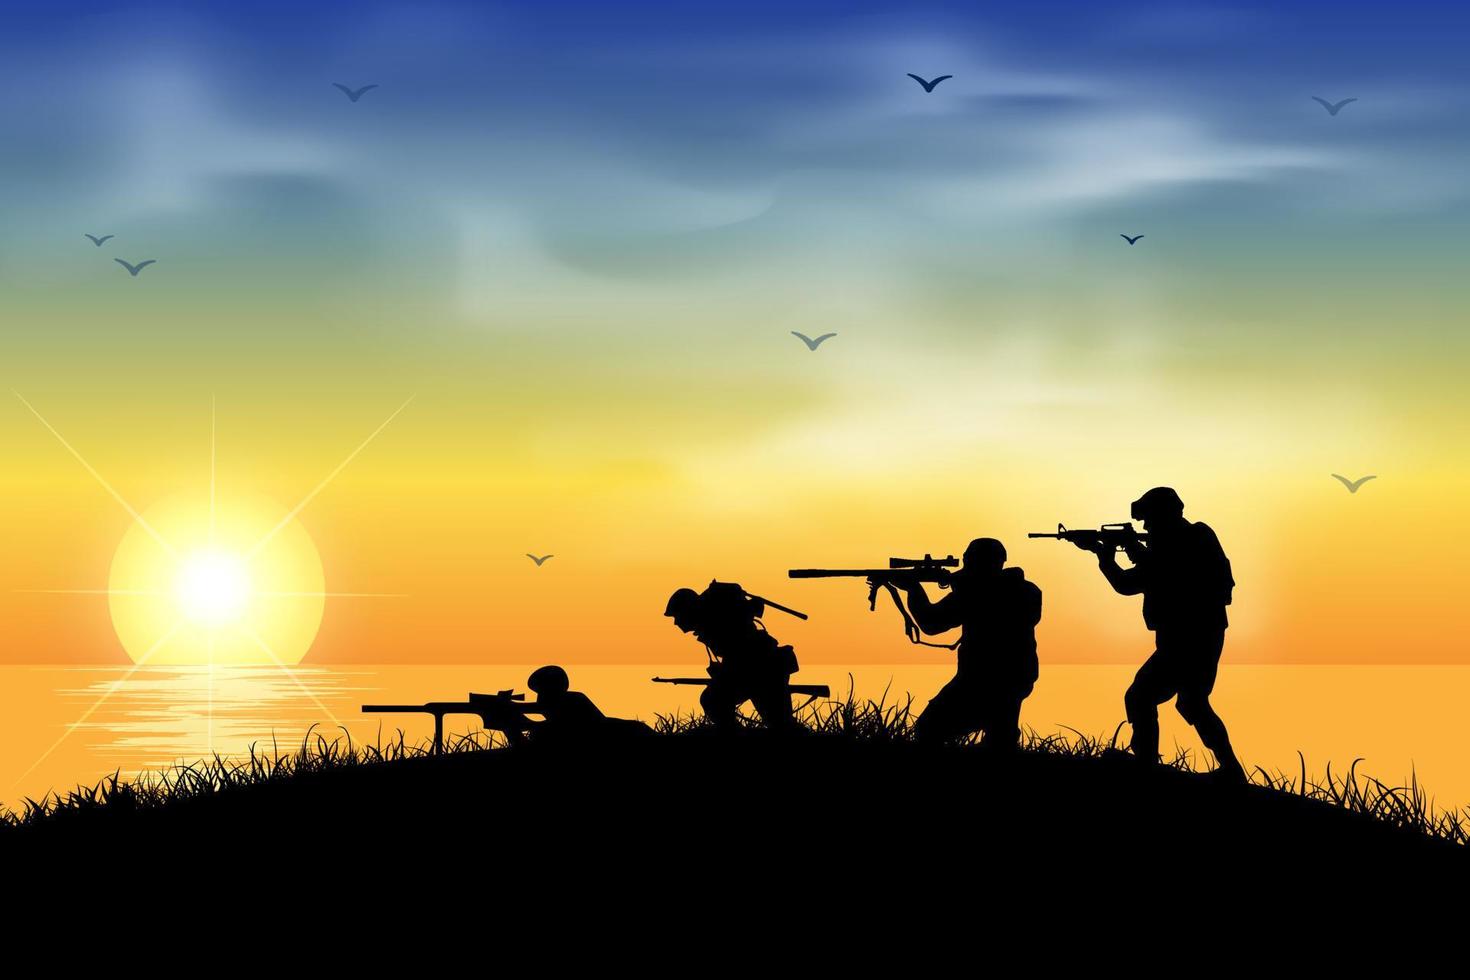 colpo della siluetta del soldato che tiene la pistola con lo sfondo del tramonto. sagoma di soldato con una pistola su uno sfondo di tramonto. silhouette soldati che combattono in guerra illustrazione vettoriale. vettore